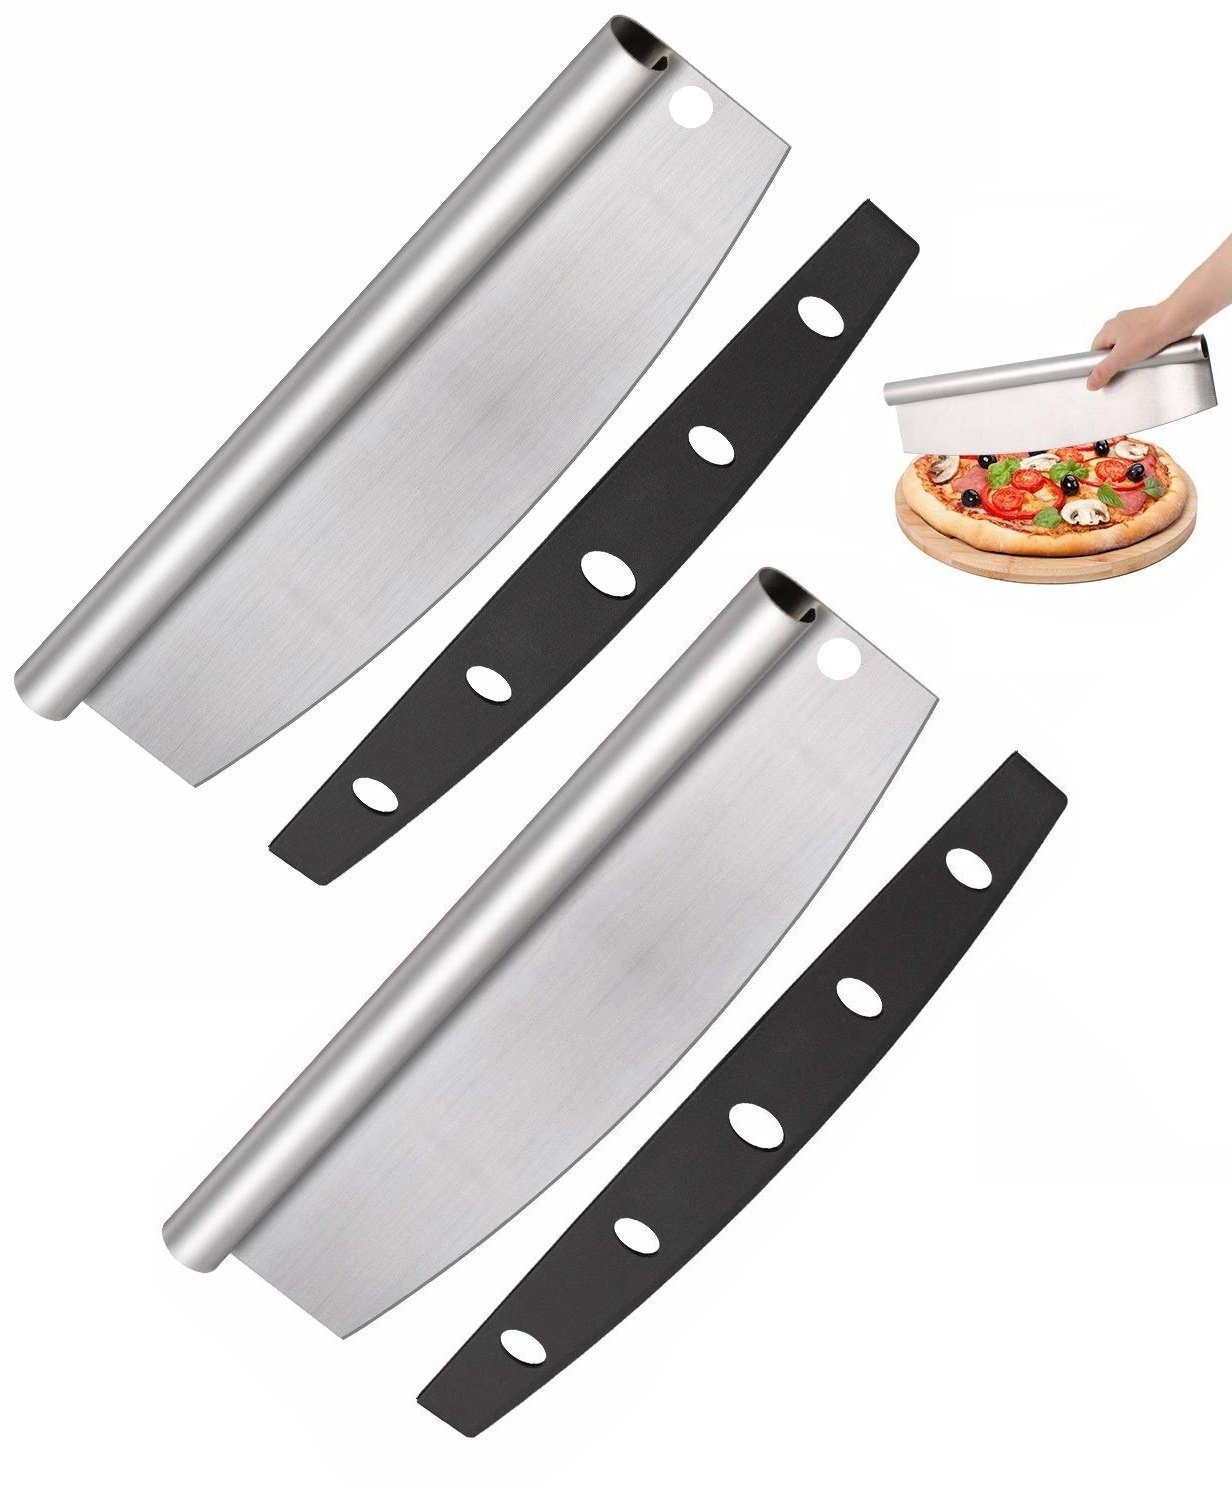 BAYLI Pizzaschneider 2 x scharf Pizza und Pizzaschneider Schneider Wiegemesser Kräuter